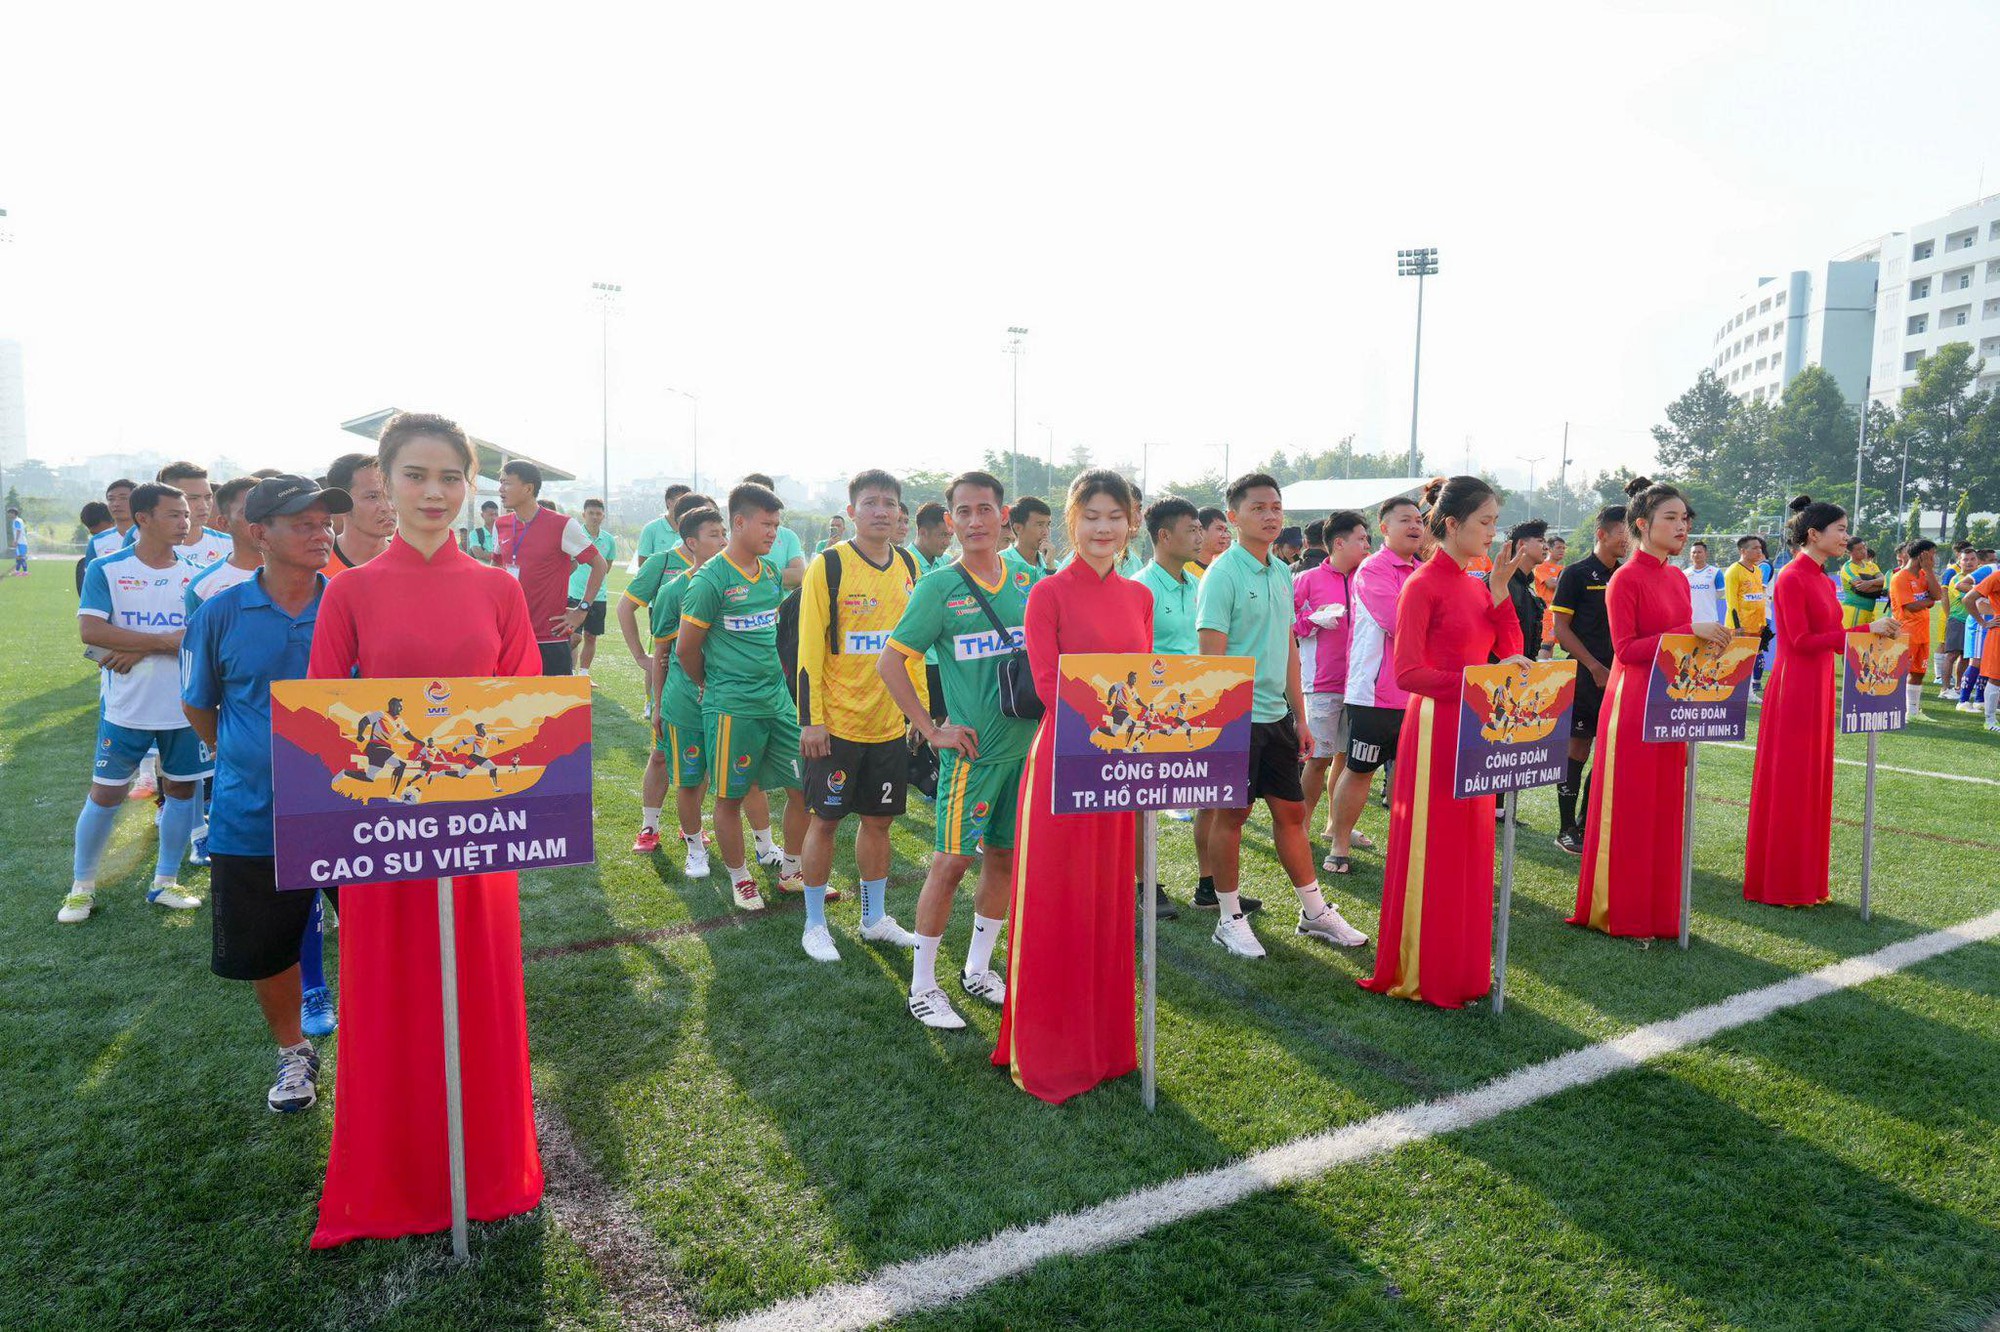 Khai mạc Giải Vô địch Bóng đá Công nhân toàn quốc 2023 với tổng giải thưởng gần 900 triệu đồng - Ảnh 1.